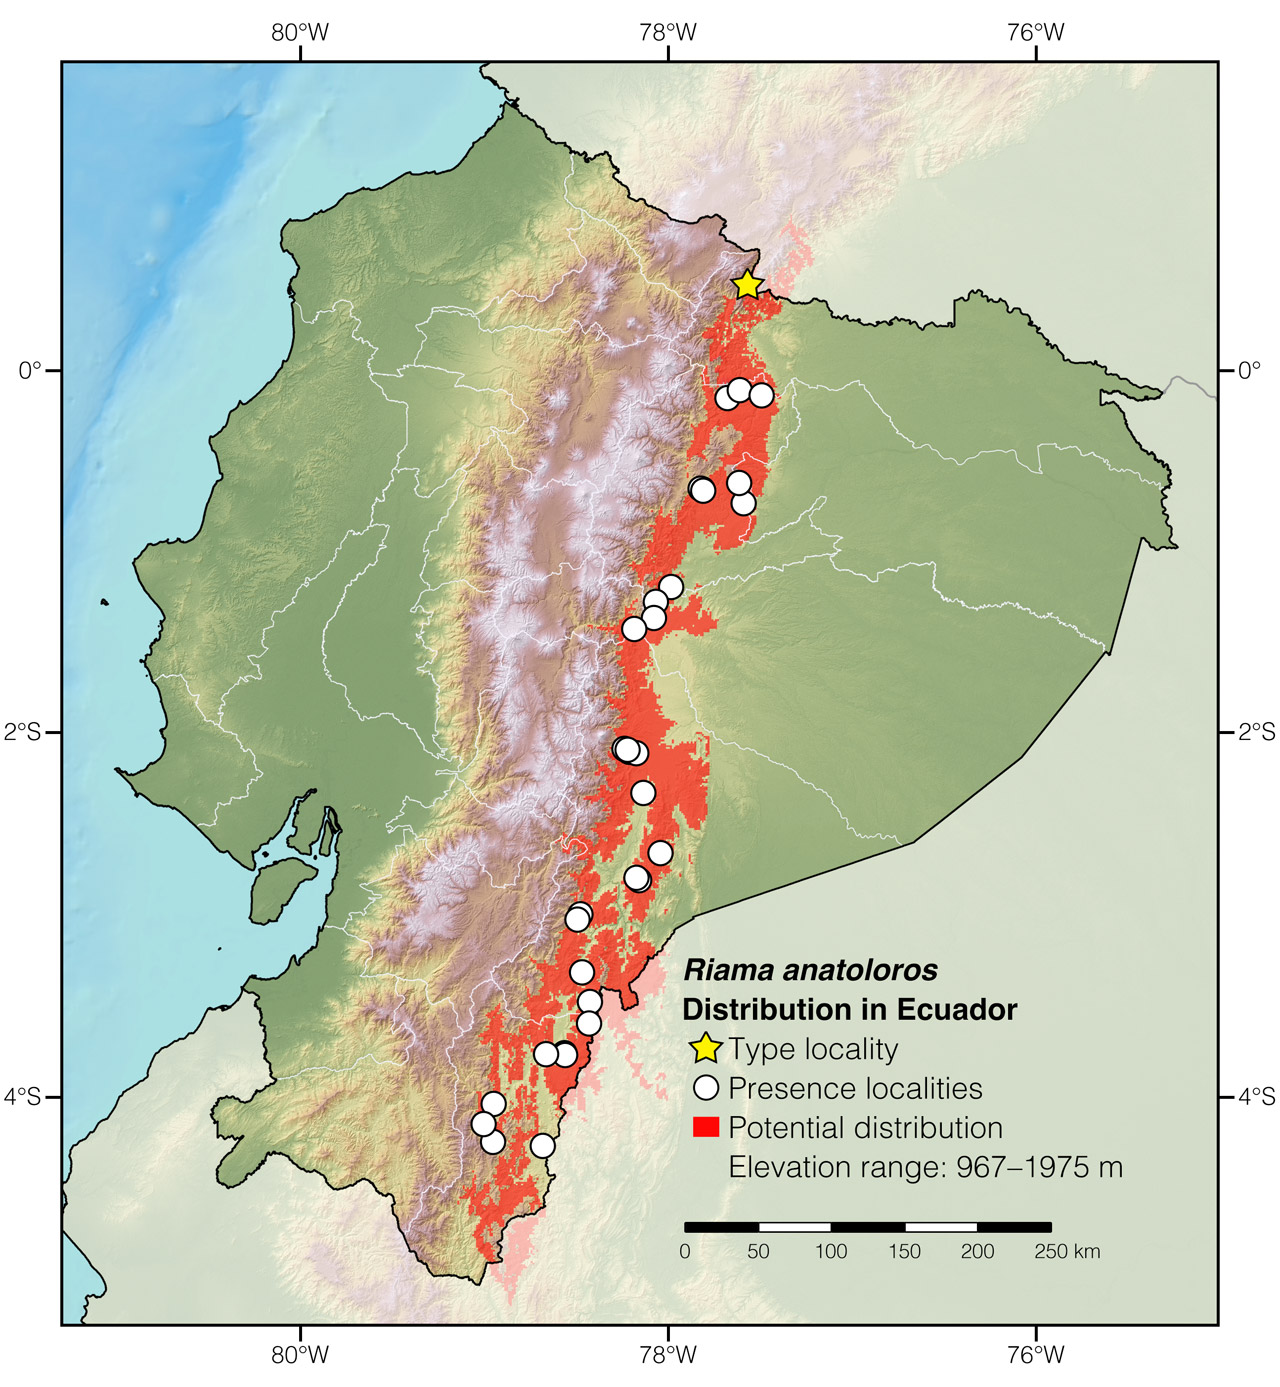 Distribution of Riama anatoloros in Ecuador